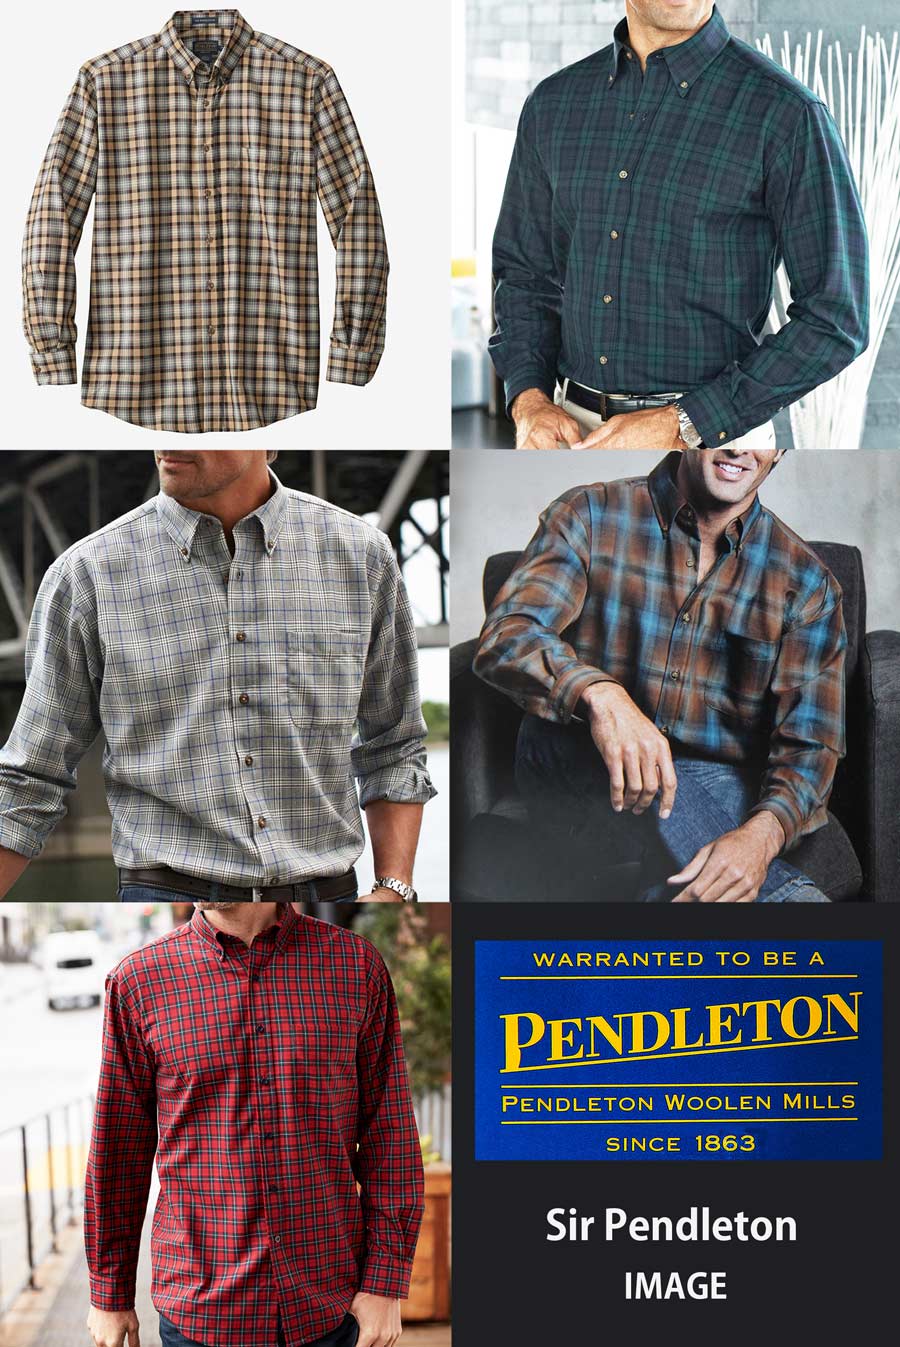 画像: ペンドルトン サーペンドルトン ウールシャツ（ペンドルトン ハンティング タータン）S/Pendleton Sir Pendleton Wool Shirt(Pendleton Hunting Tartan)  